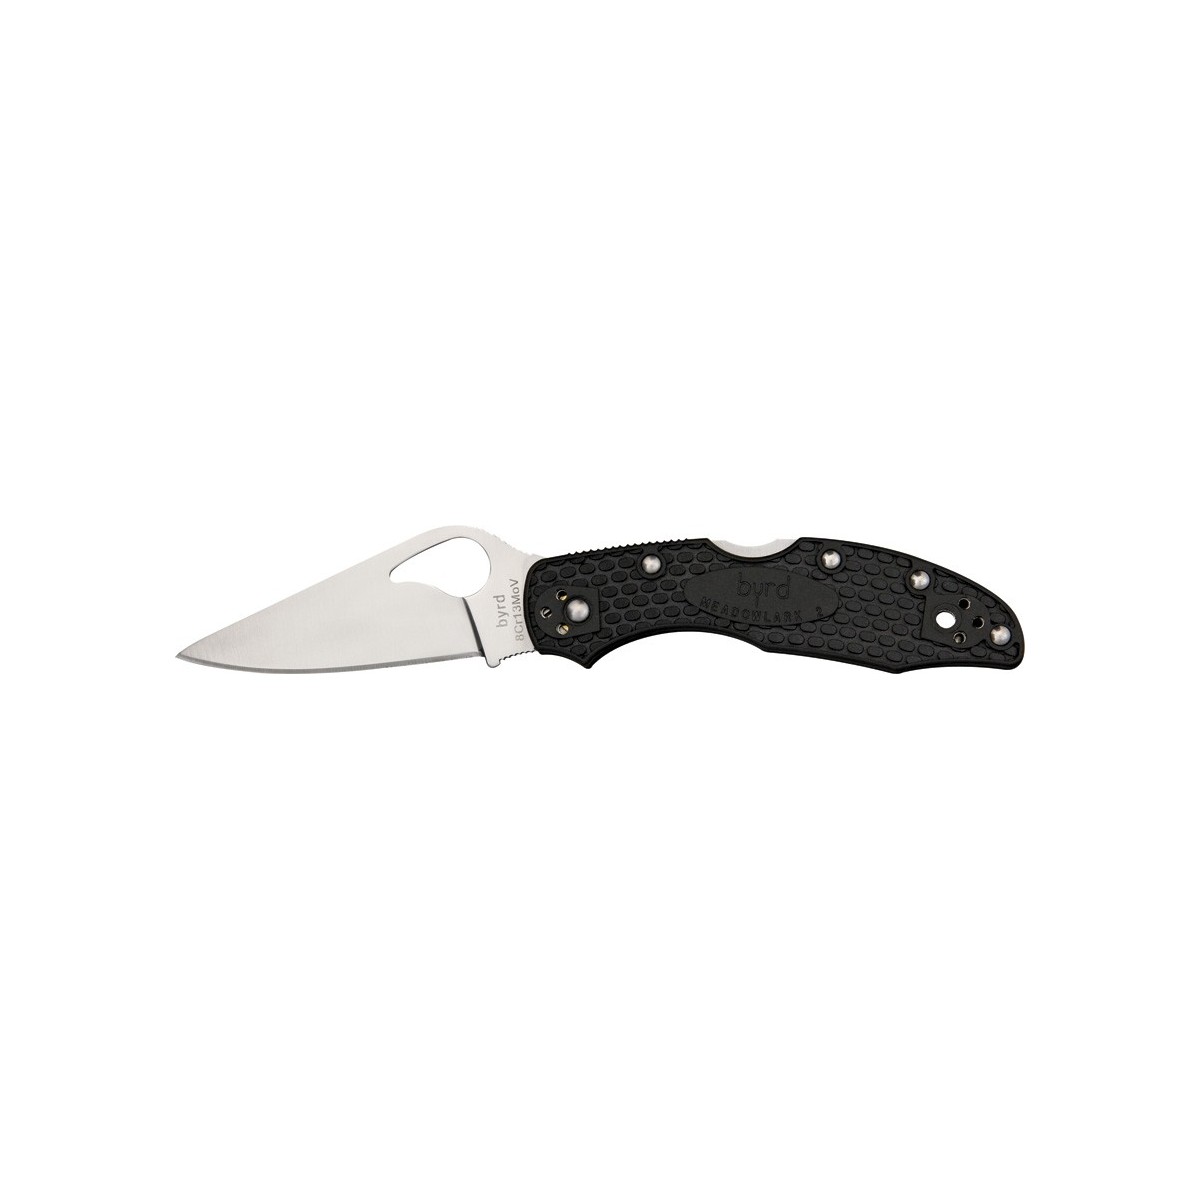 มีดพับ Byrd Meadowlark 2 Lockback Knife FRN (2.84" Satin) BY04PBK2